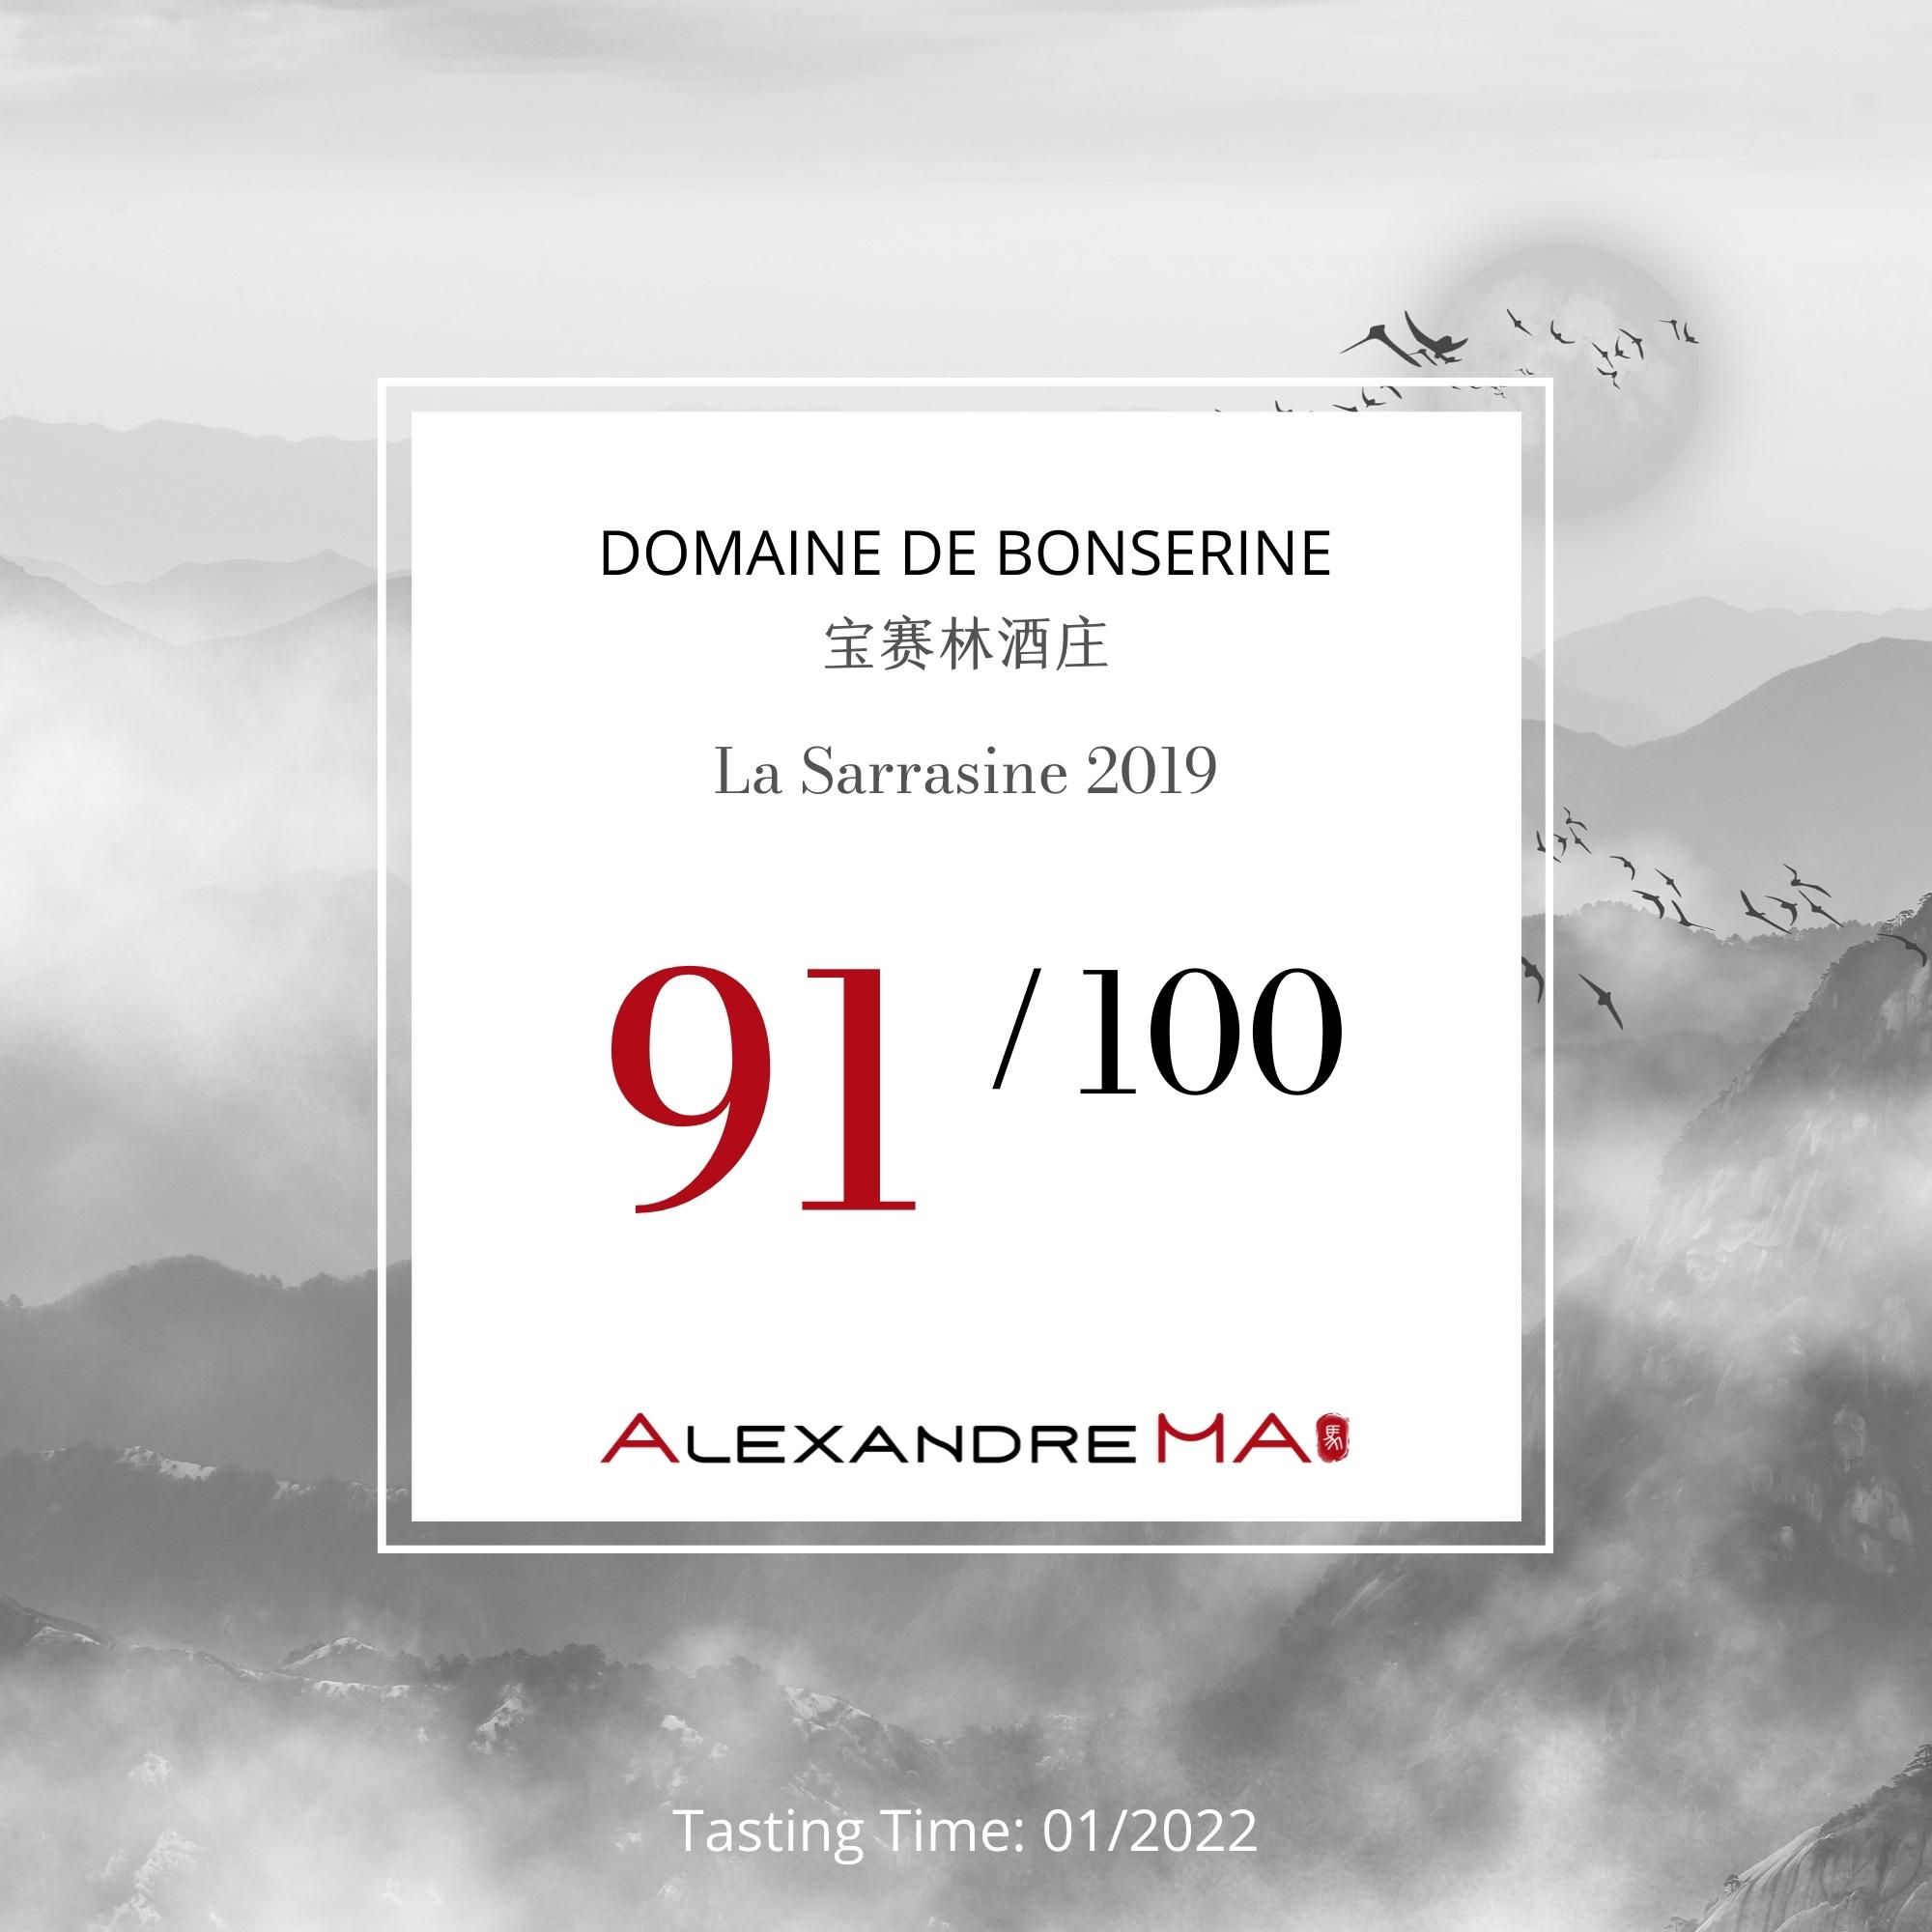 Domaine de Bonserine-La Sarrasine 2019 - Alexandre MA